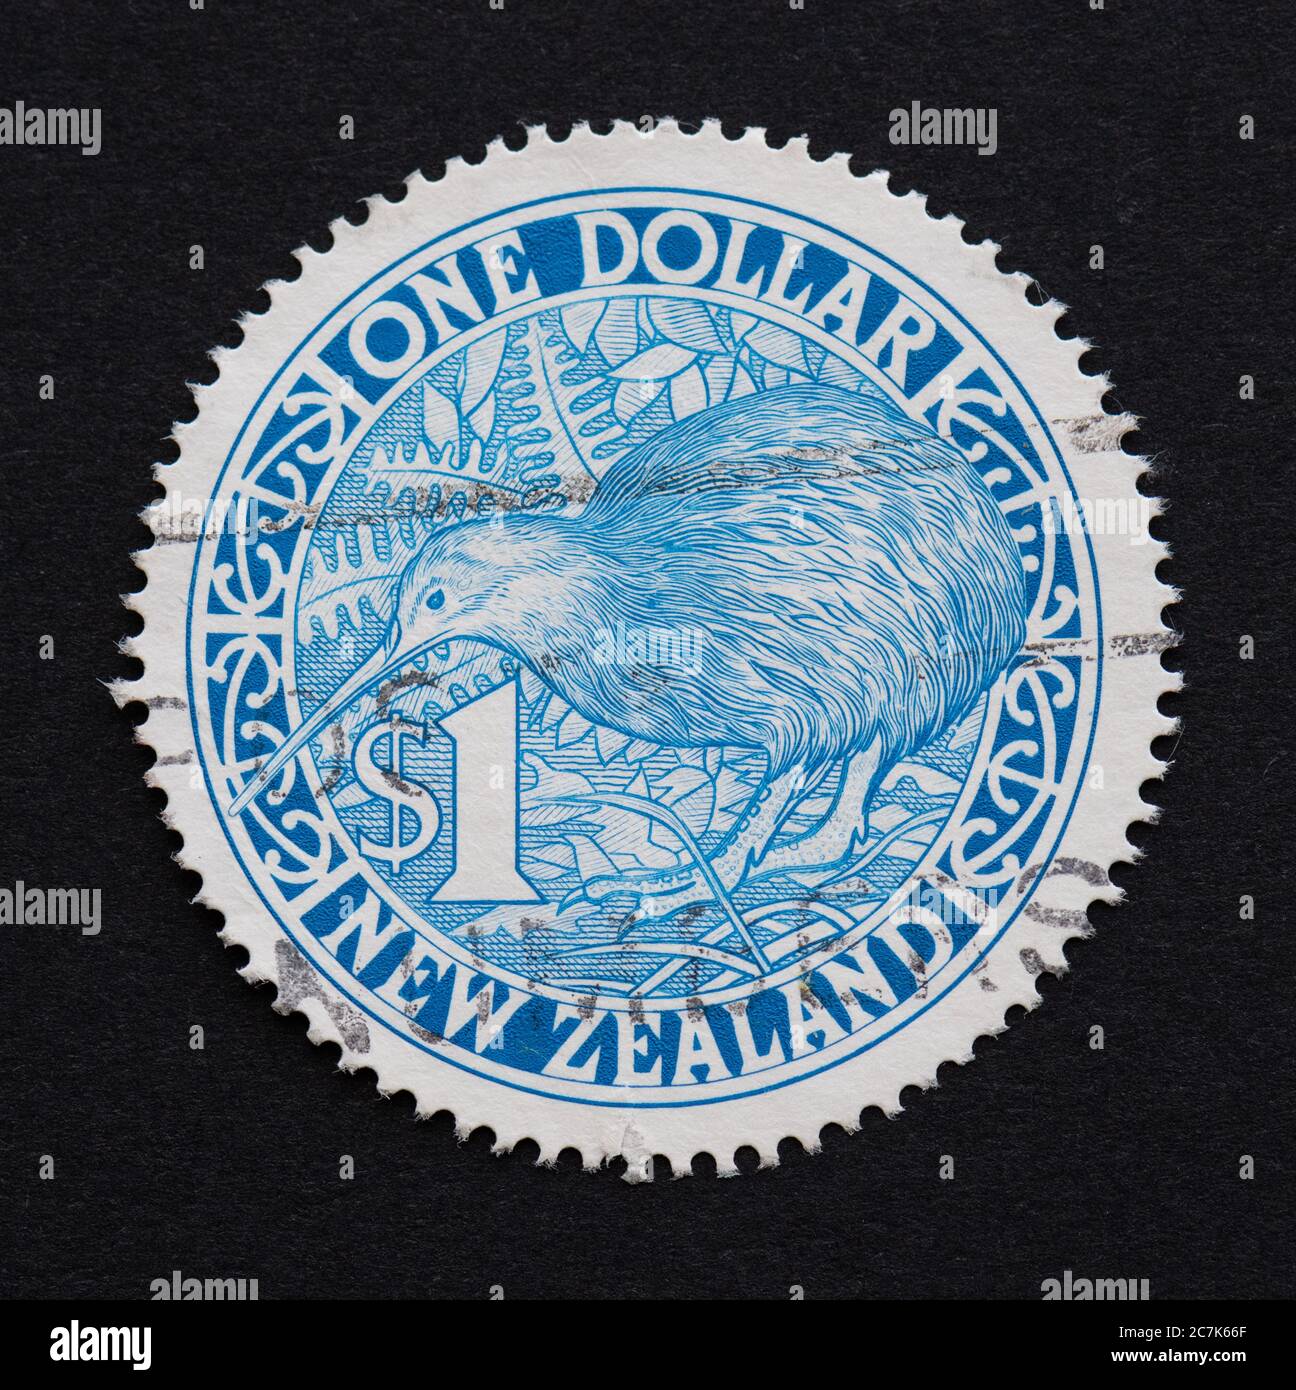 Timbre-poste circulaire - Kiwi de Nouvelle-Zélande 1 $ émis en 1993 Banque D'Images